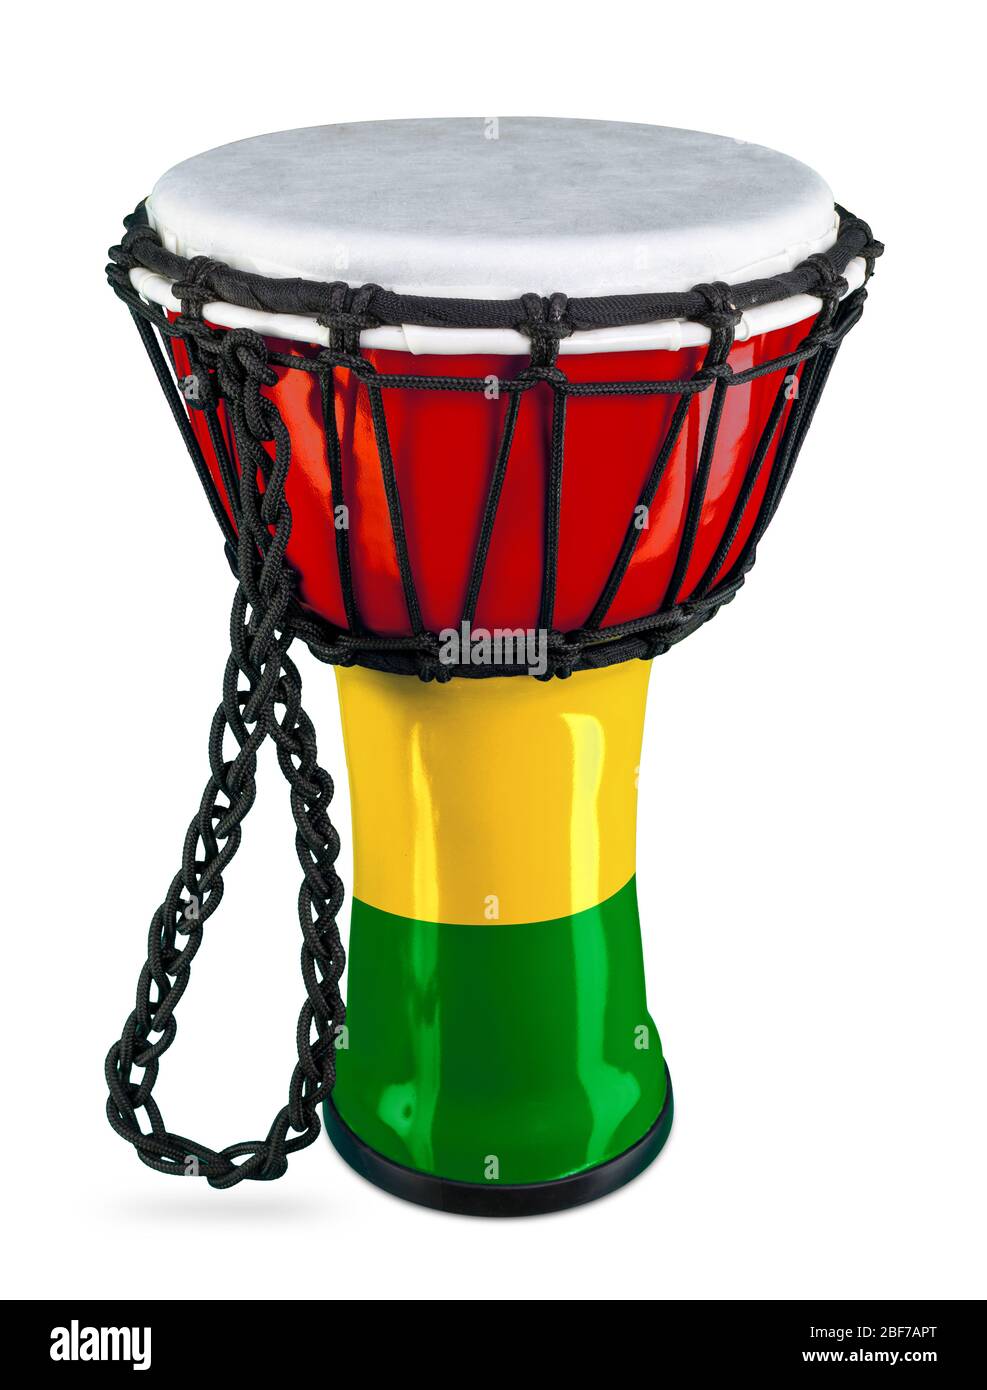 djembe traditionnel tambour manuel de la culture africaine percussions instrument dans des couleurs de drapeau vert rouge jaune coloré ghana isolé sur fond blanc Banque D'Images